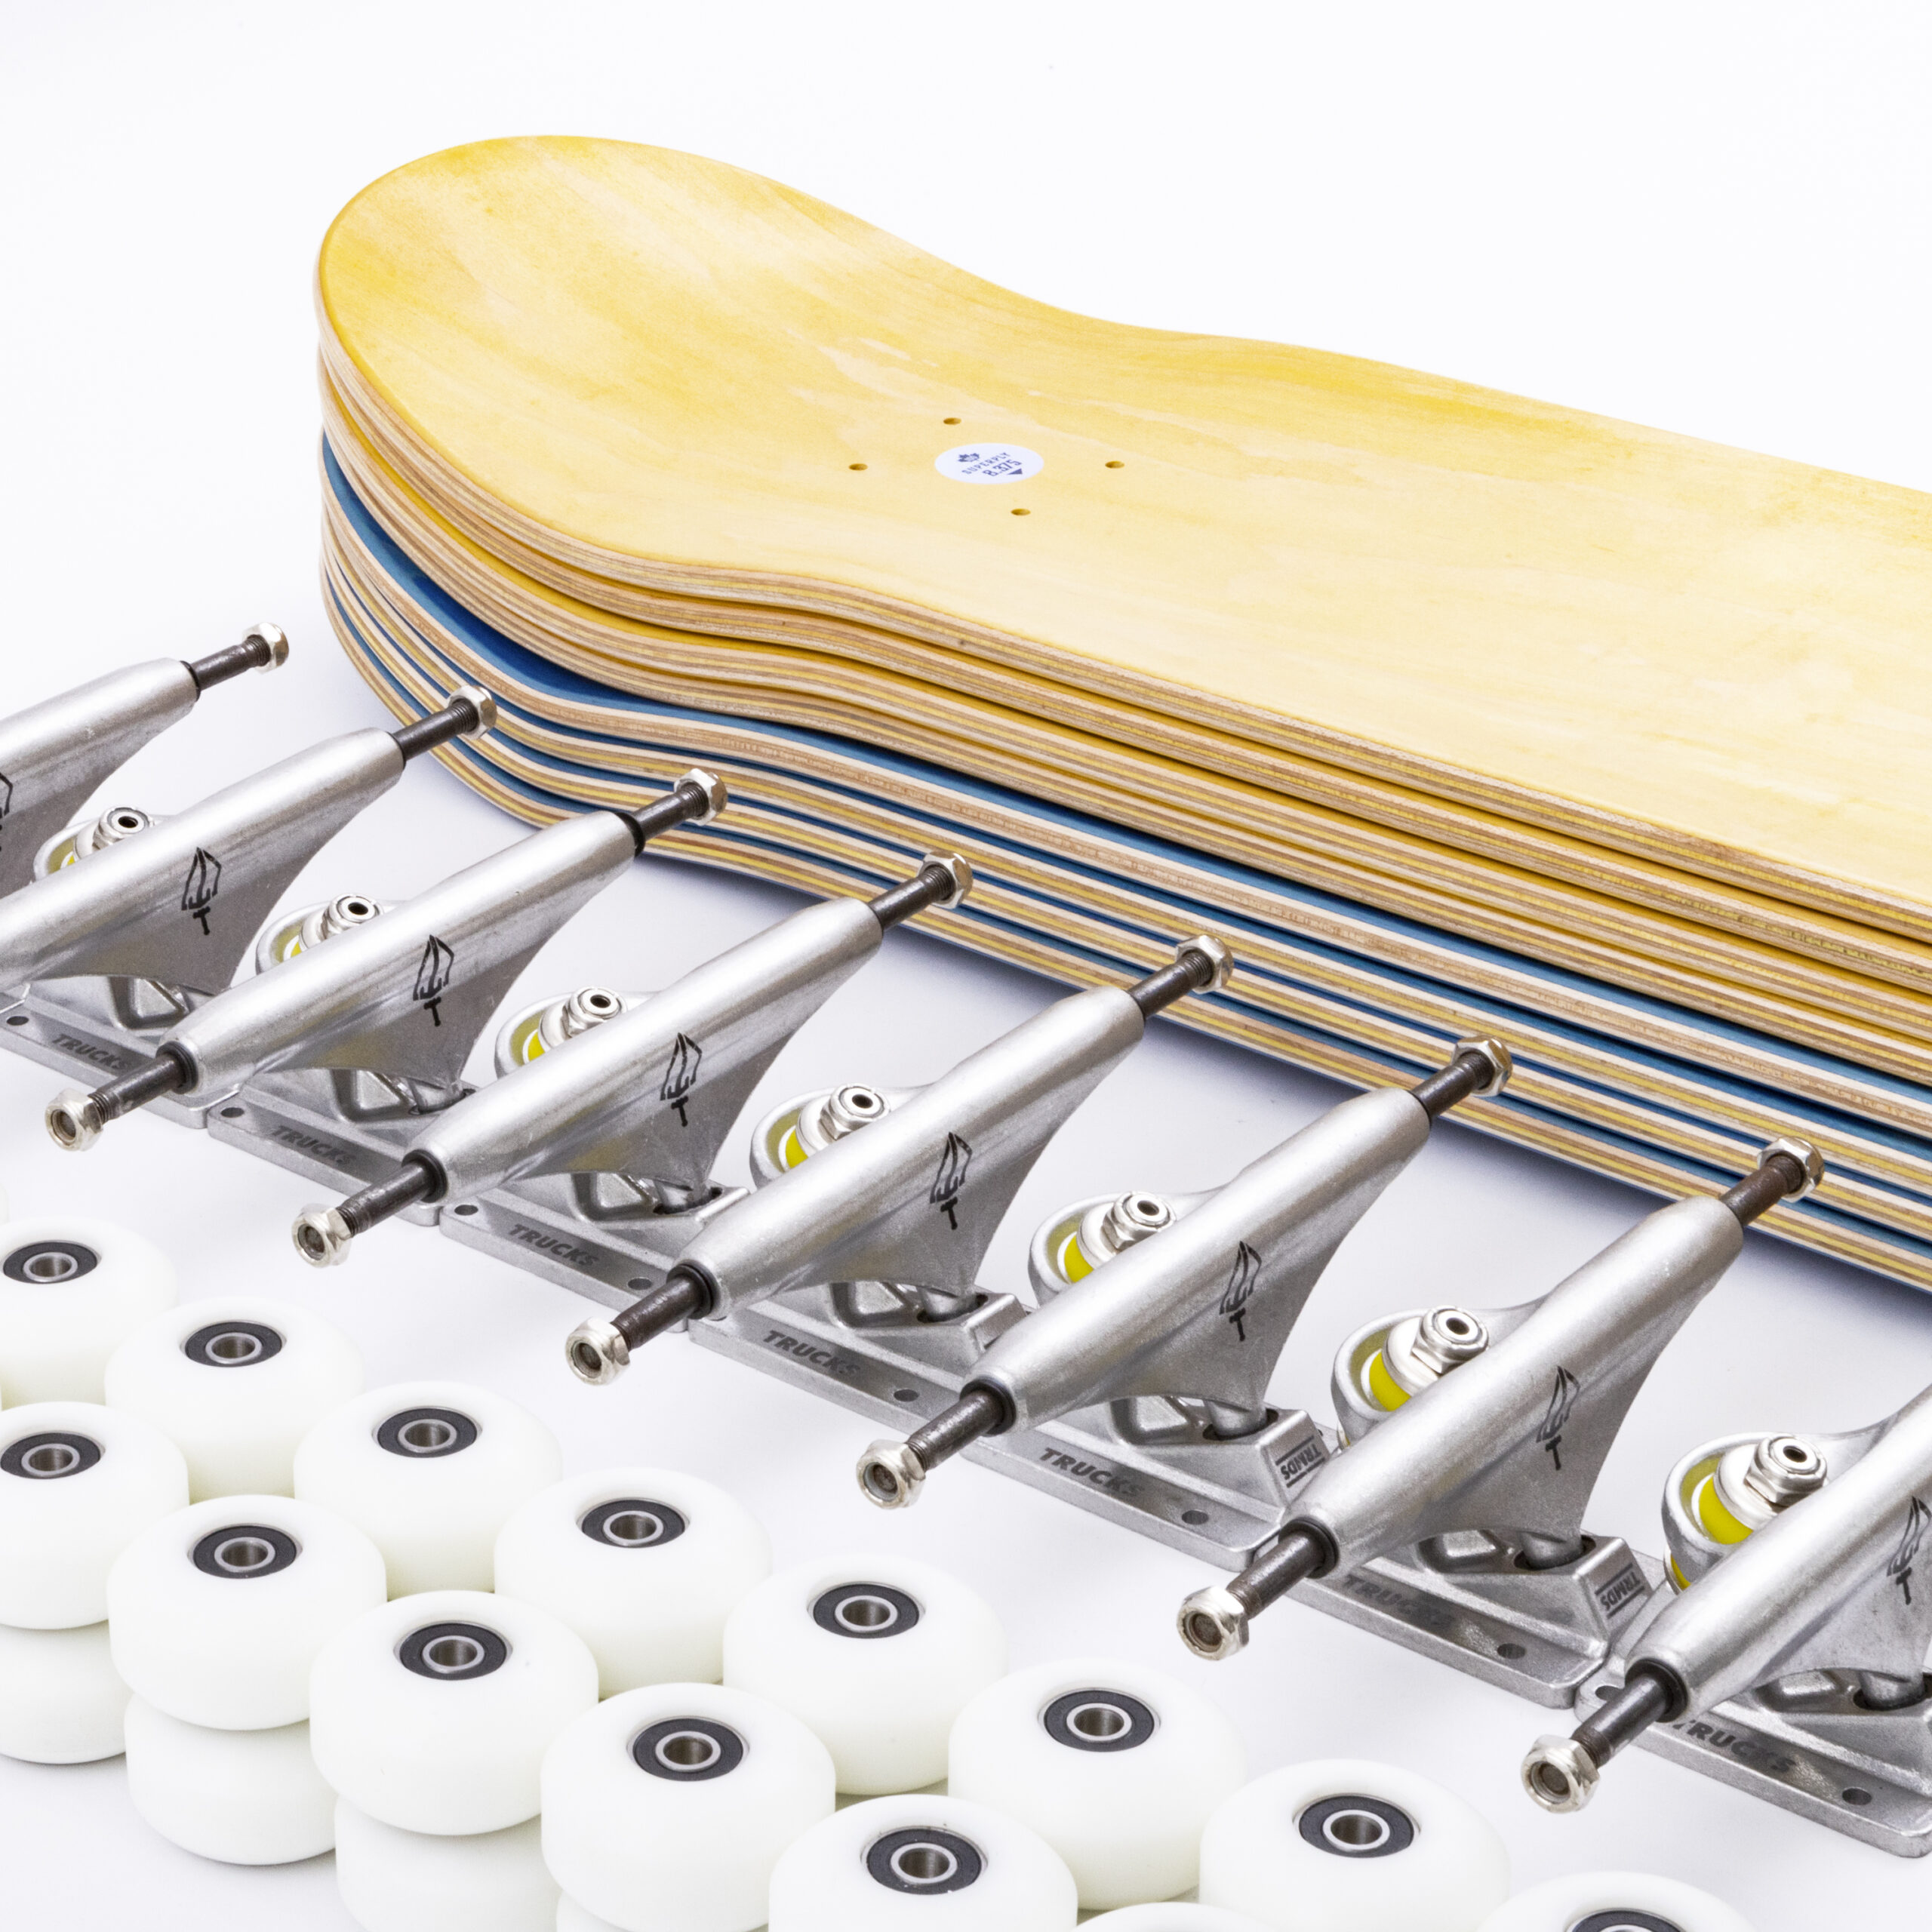 Skateboard Deck-Größe, Form, Konstruktion, Material, Design, Breite, Länge, Kicktail, Nose, Concave, Completes, Skatebords